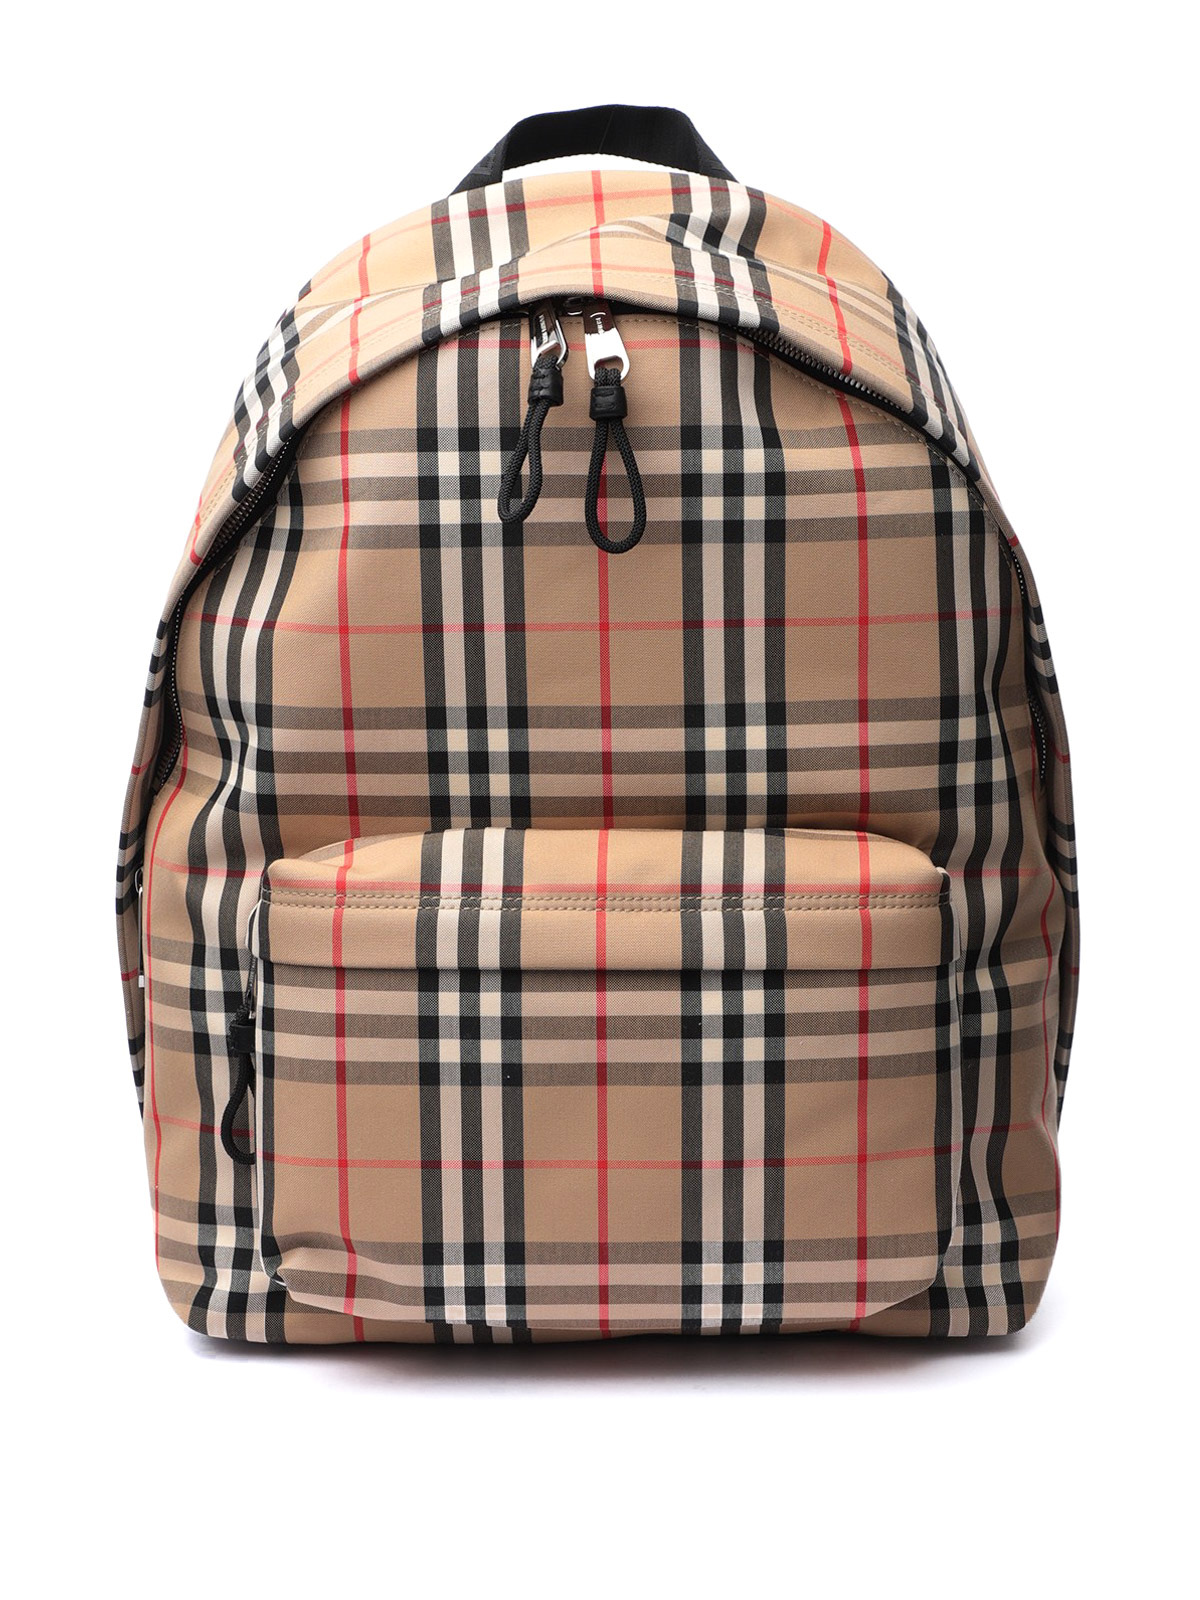 Backpacks Burberry - Vintage check backpack - 8016106 | iKRIX.com